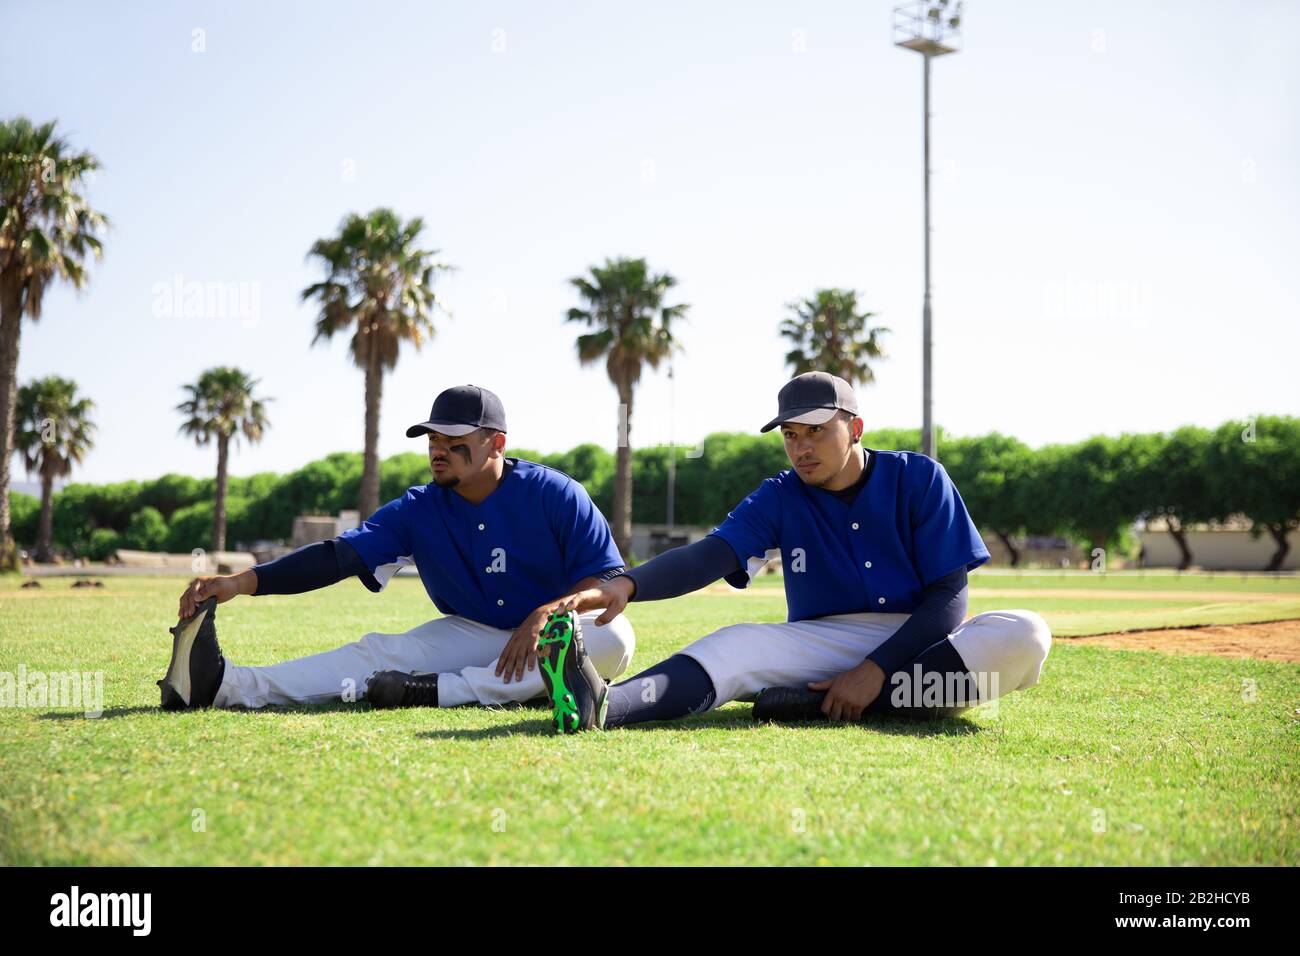 Baseball players stretching Stock Photo